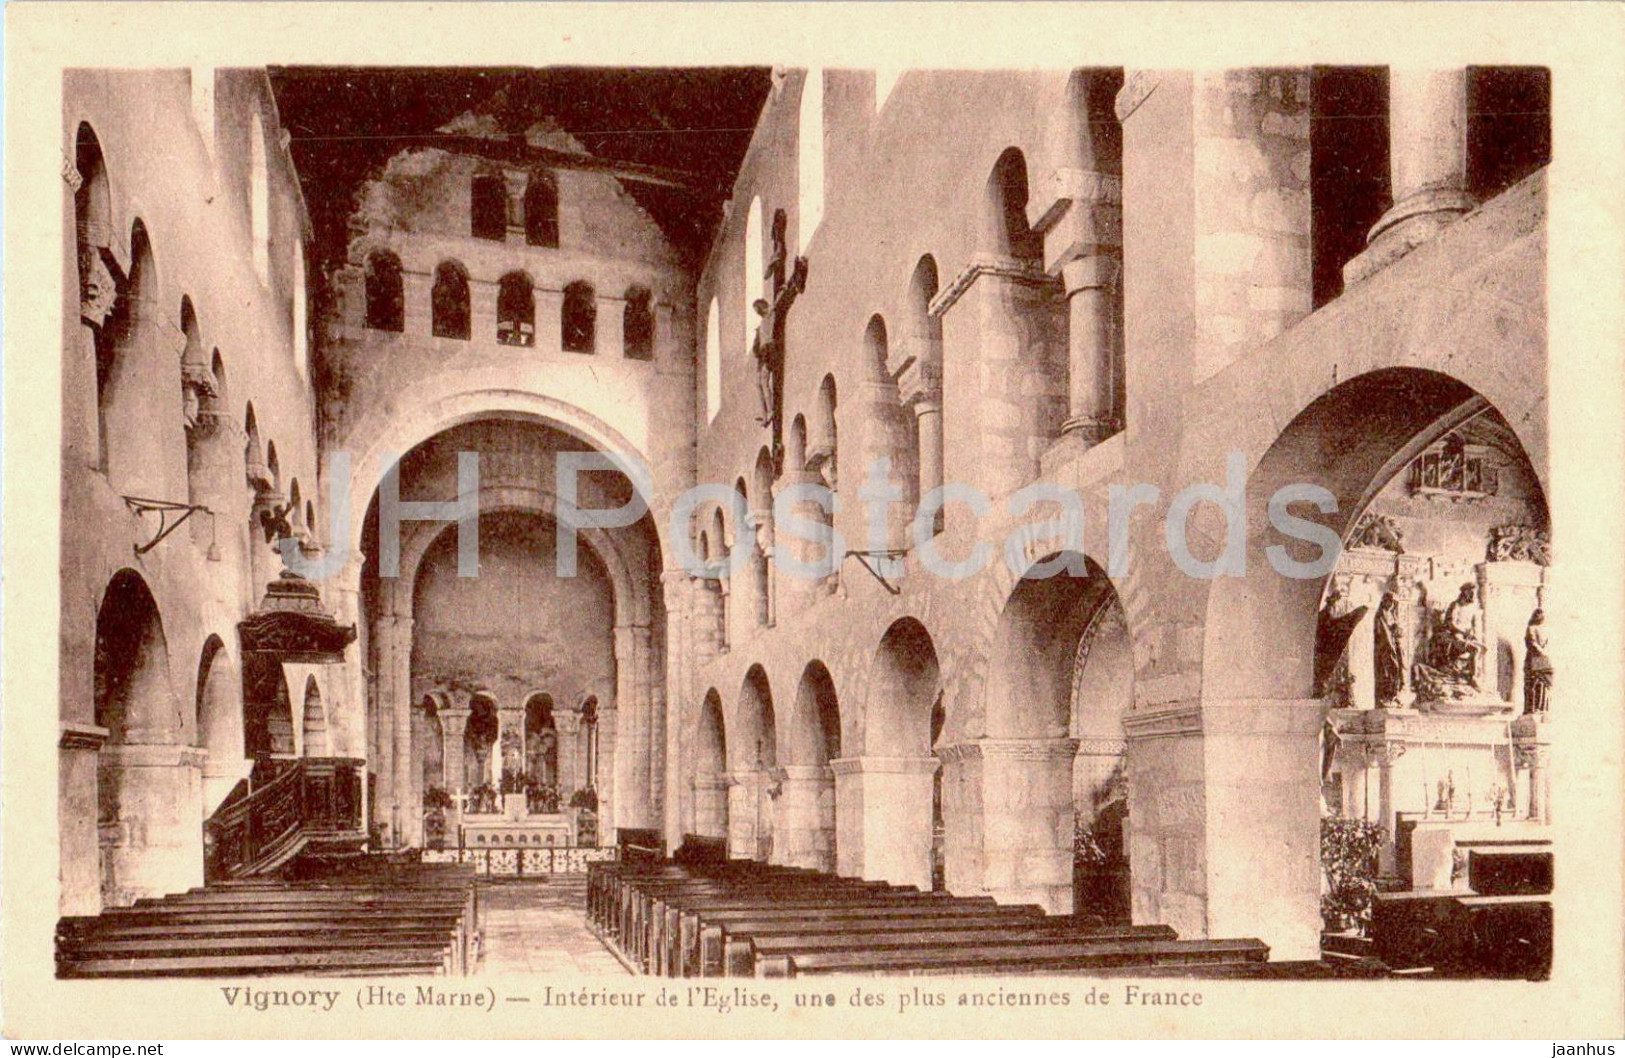 Vignory - Interieur De L'Eglise - Une Des Plus Anciennes De France - Church - Old Postcard - France - Unused - Vignory